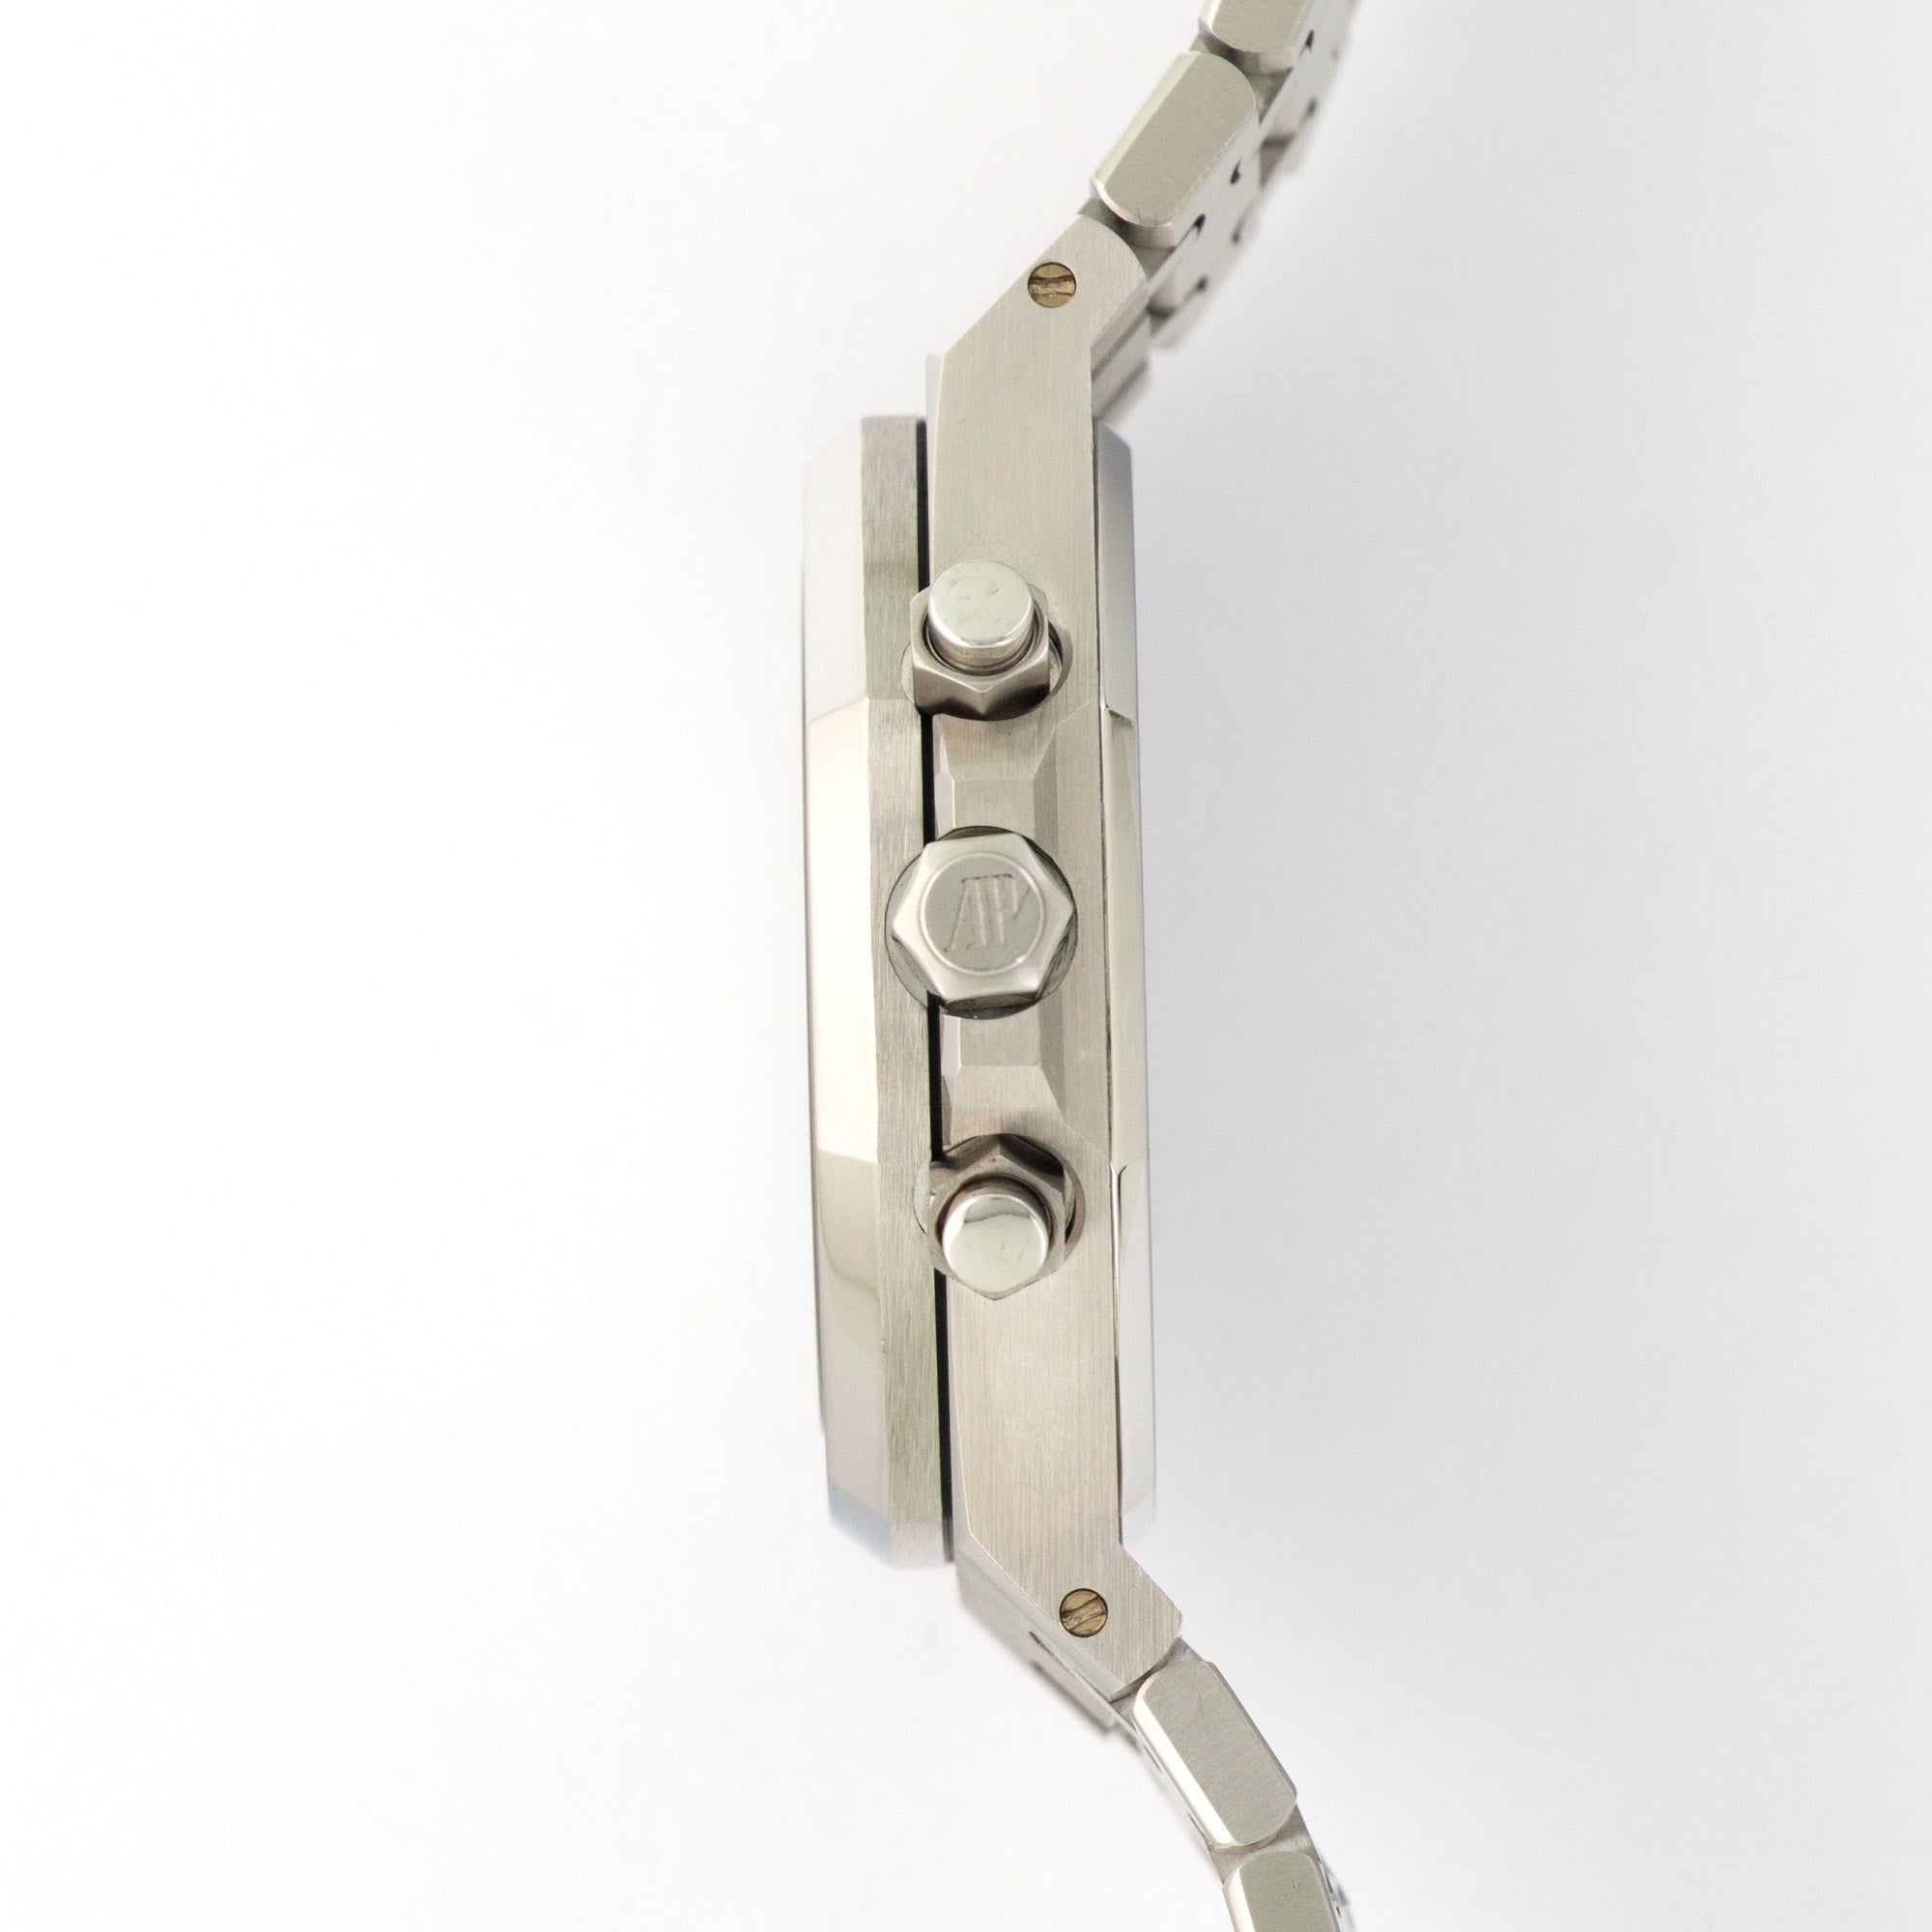 Audemars Piguet - Audemars Piguet Steel Royal Oak Chronograph Watch, Ref. 25860 - The Keystone Watches